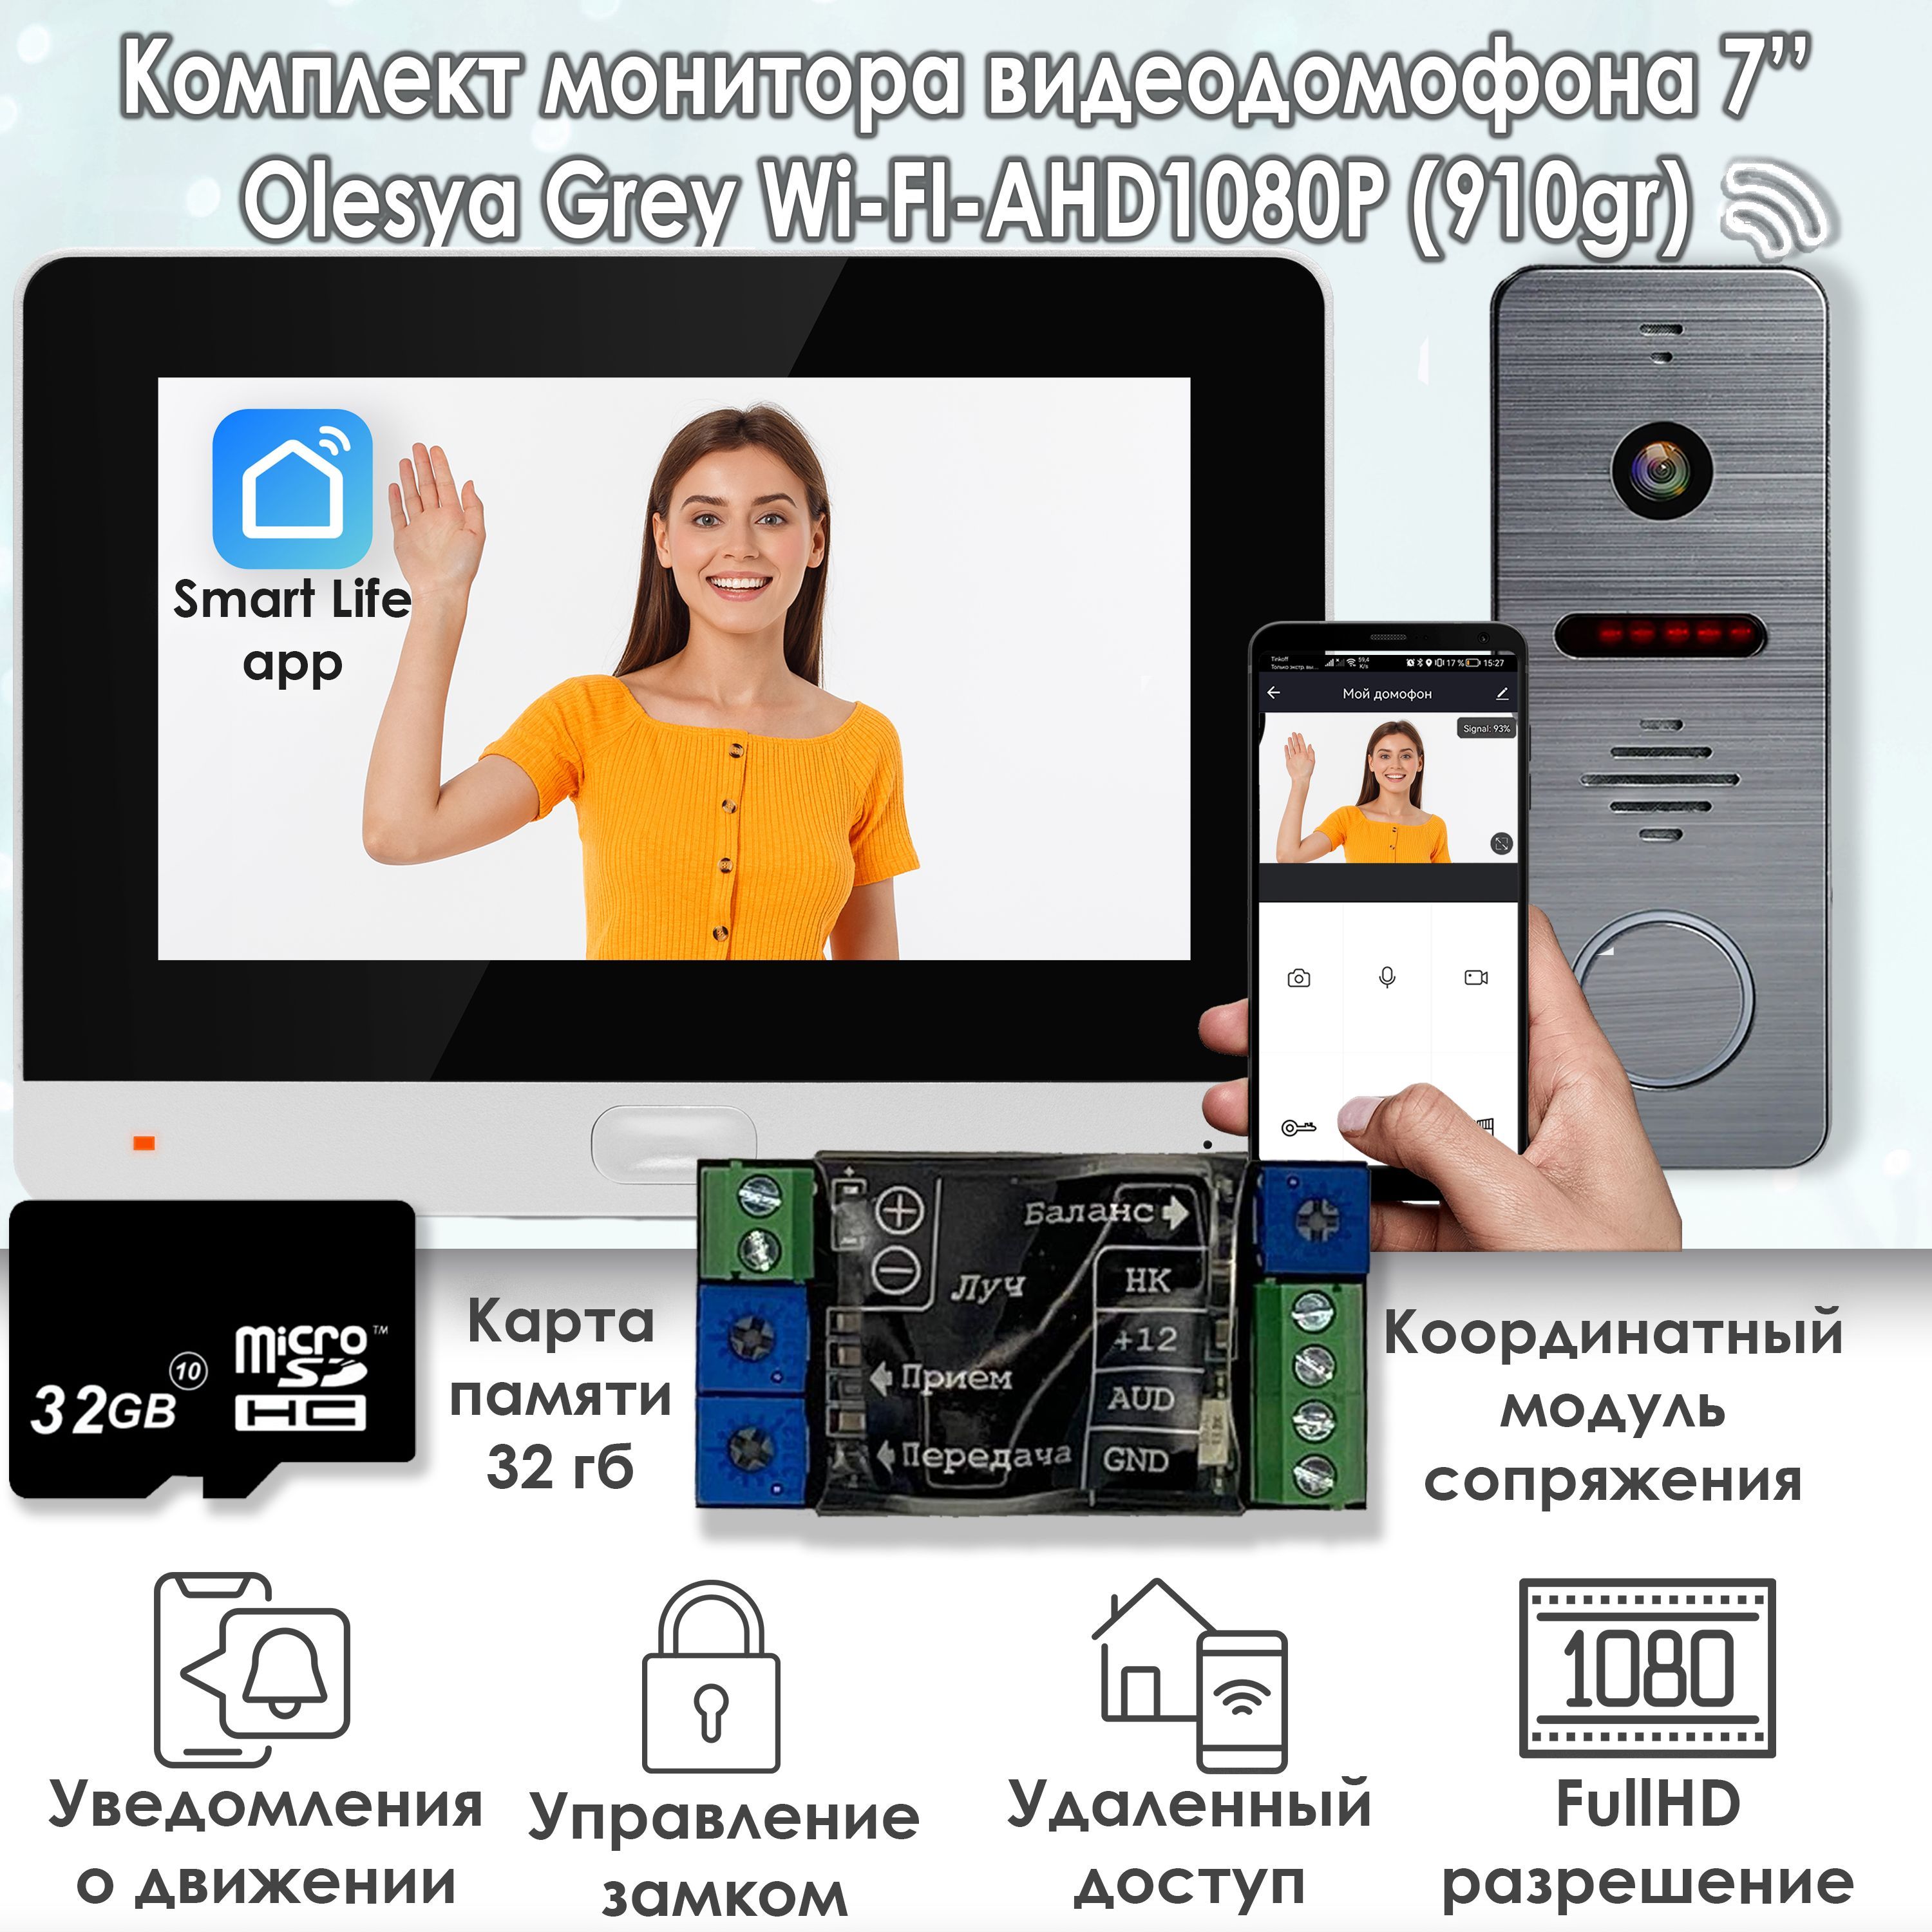 Комплект видеодомофона Alfavision Olesya Wi-Fi AHD1080P Full HD (910gr), Черный комплект видеодомофона alfavision lada ahd1080p kit 310sl карта памяти 32гб в подарок